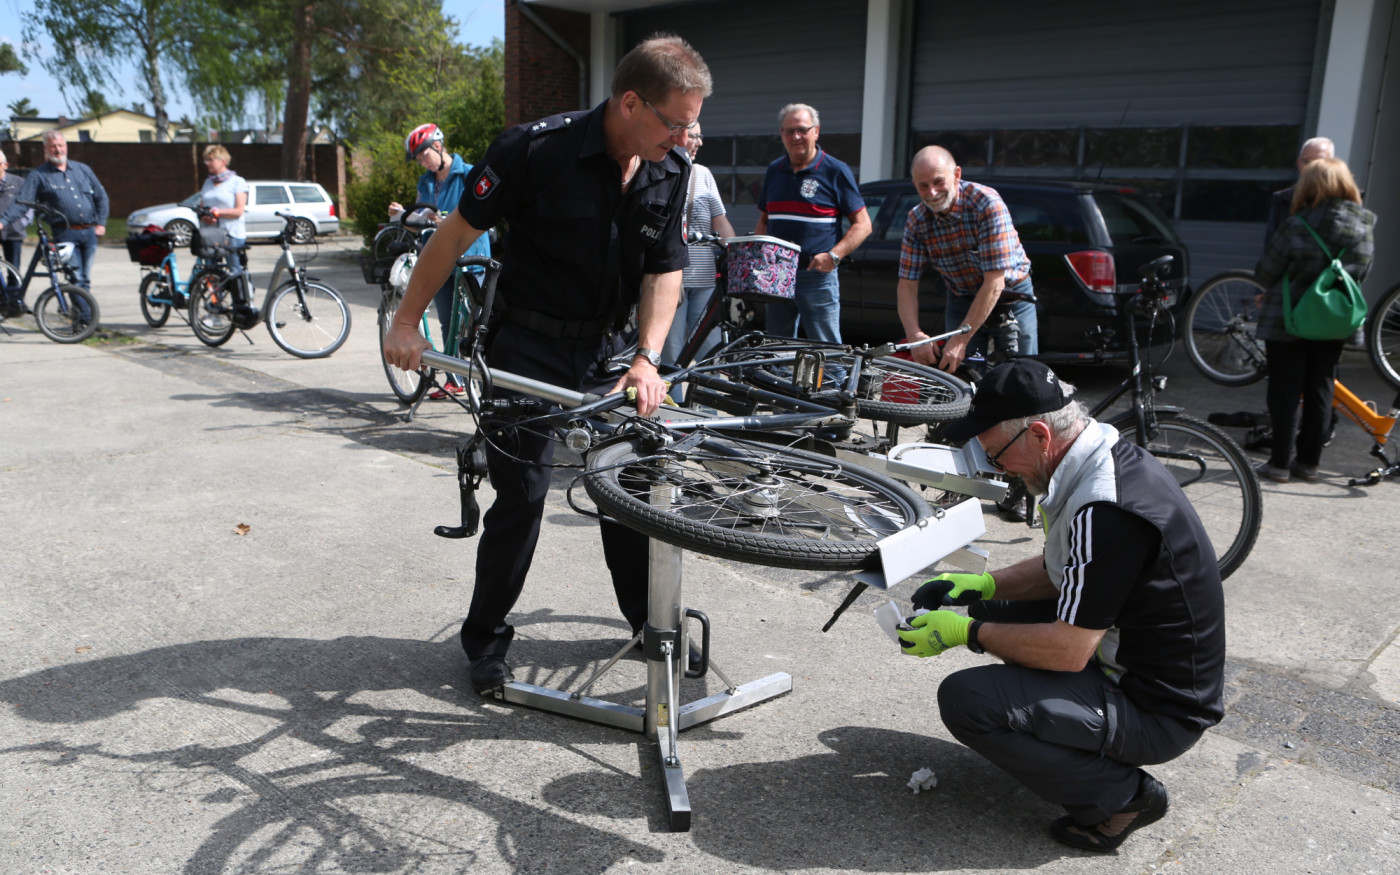 Diebstahlschutz für Fahrräder - Polizei Gifhorn startet zweite Registrieraktion